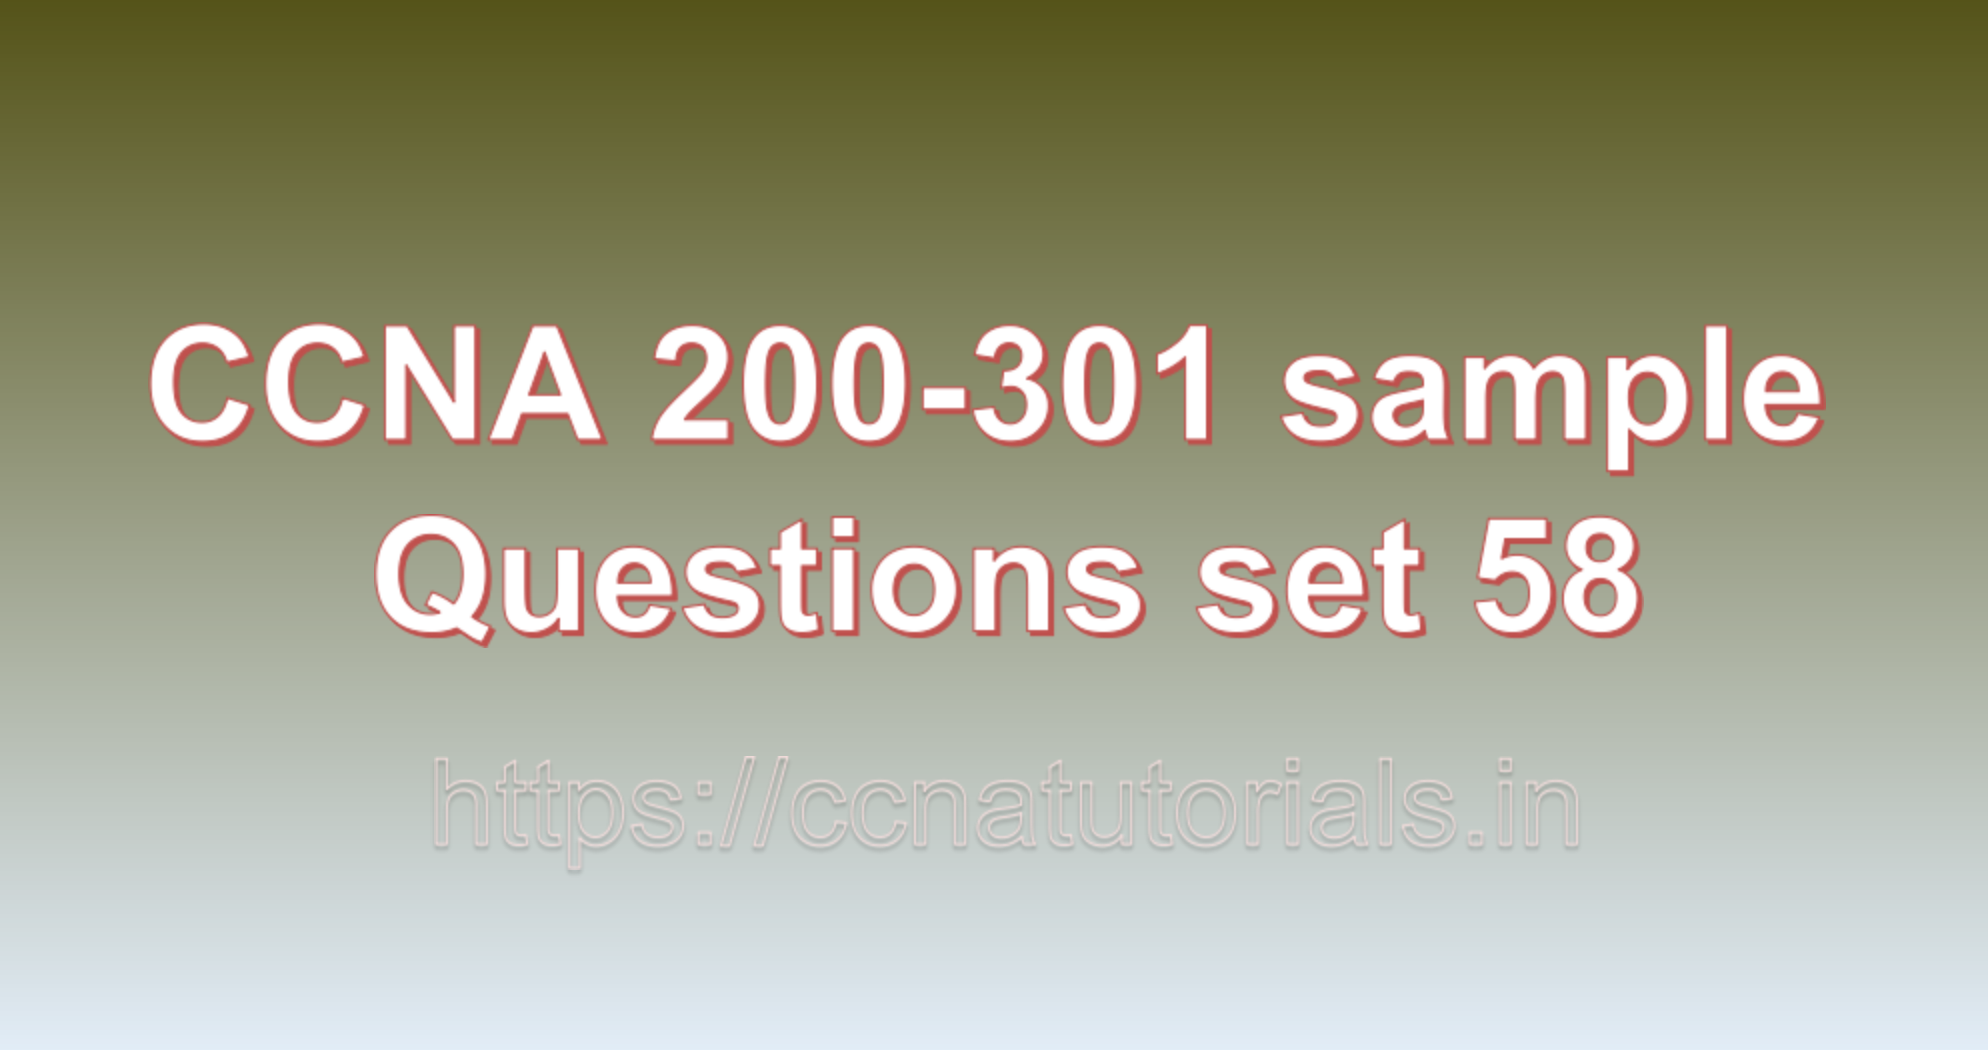 ccna sample questions set 58, ccna tutorials, CCNA Exam, ccna